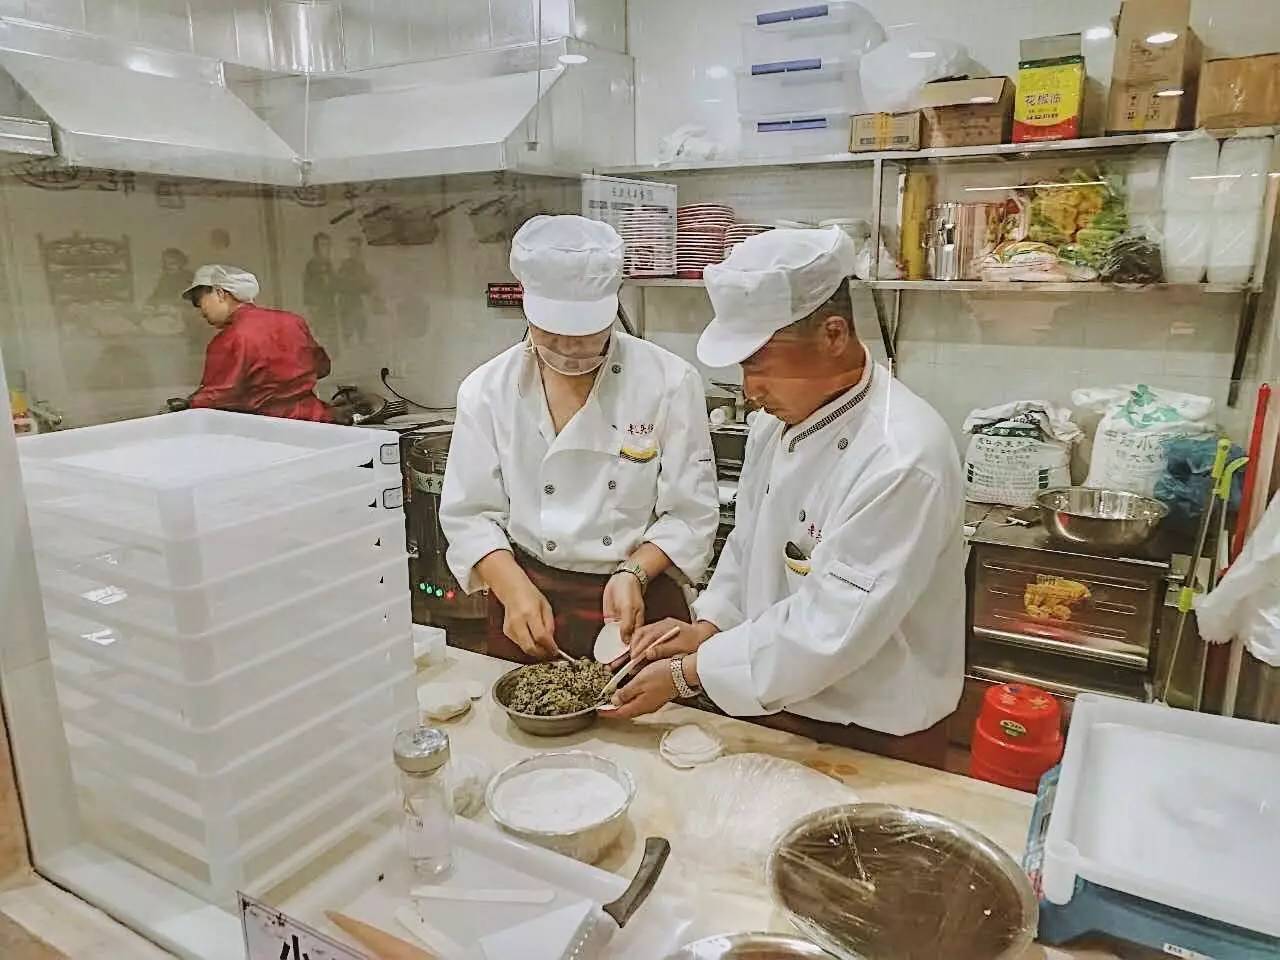 ▽现包现下▽店里明亮干净,透过玻璃能看到后厨的师傅正在制作饺子,从